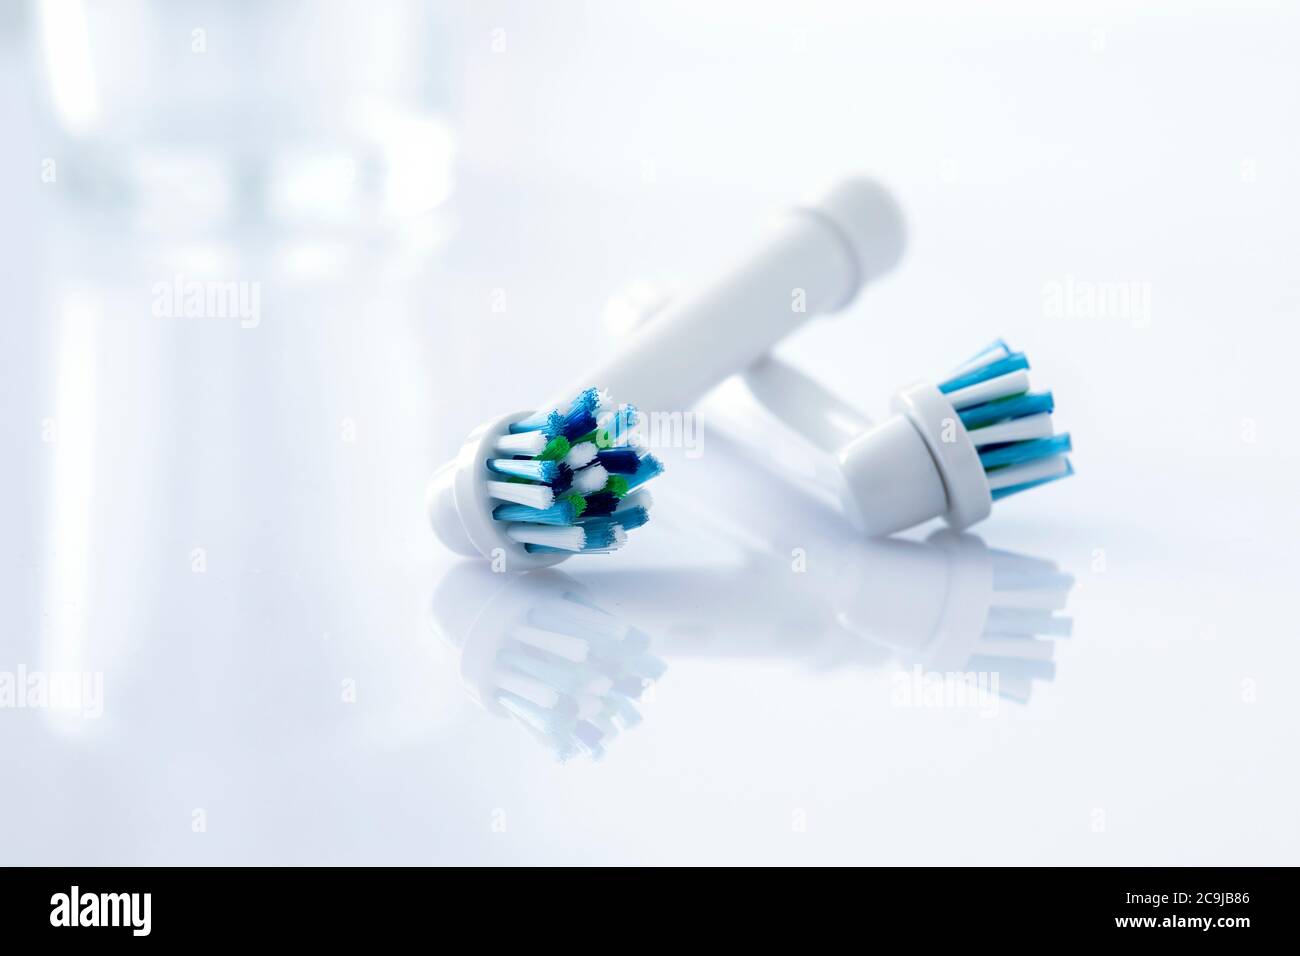 Cabezales de cepillo de dientes eléctricos contra un fondo blanco. Foto de stock